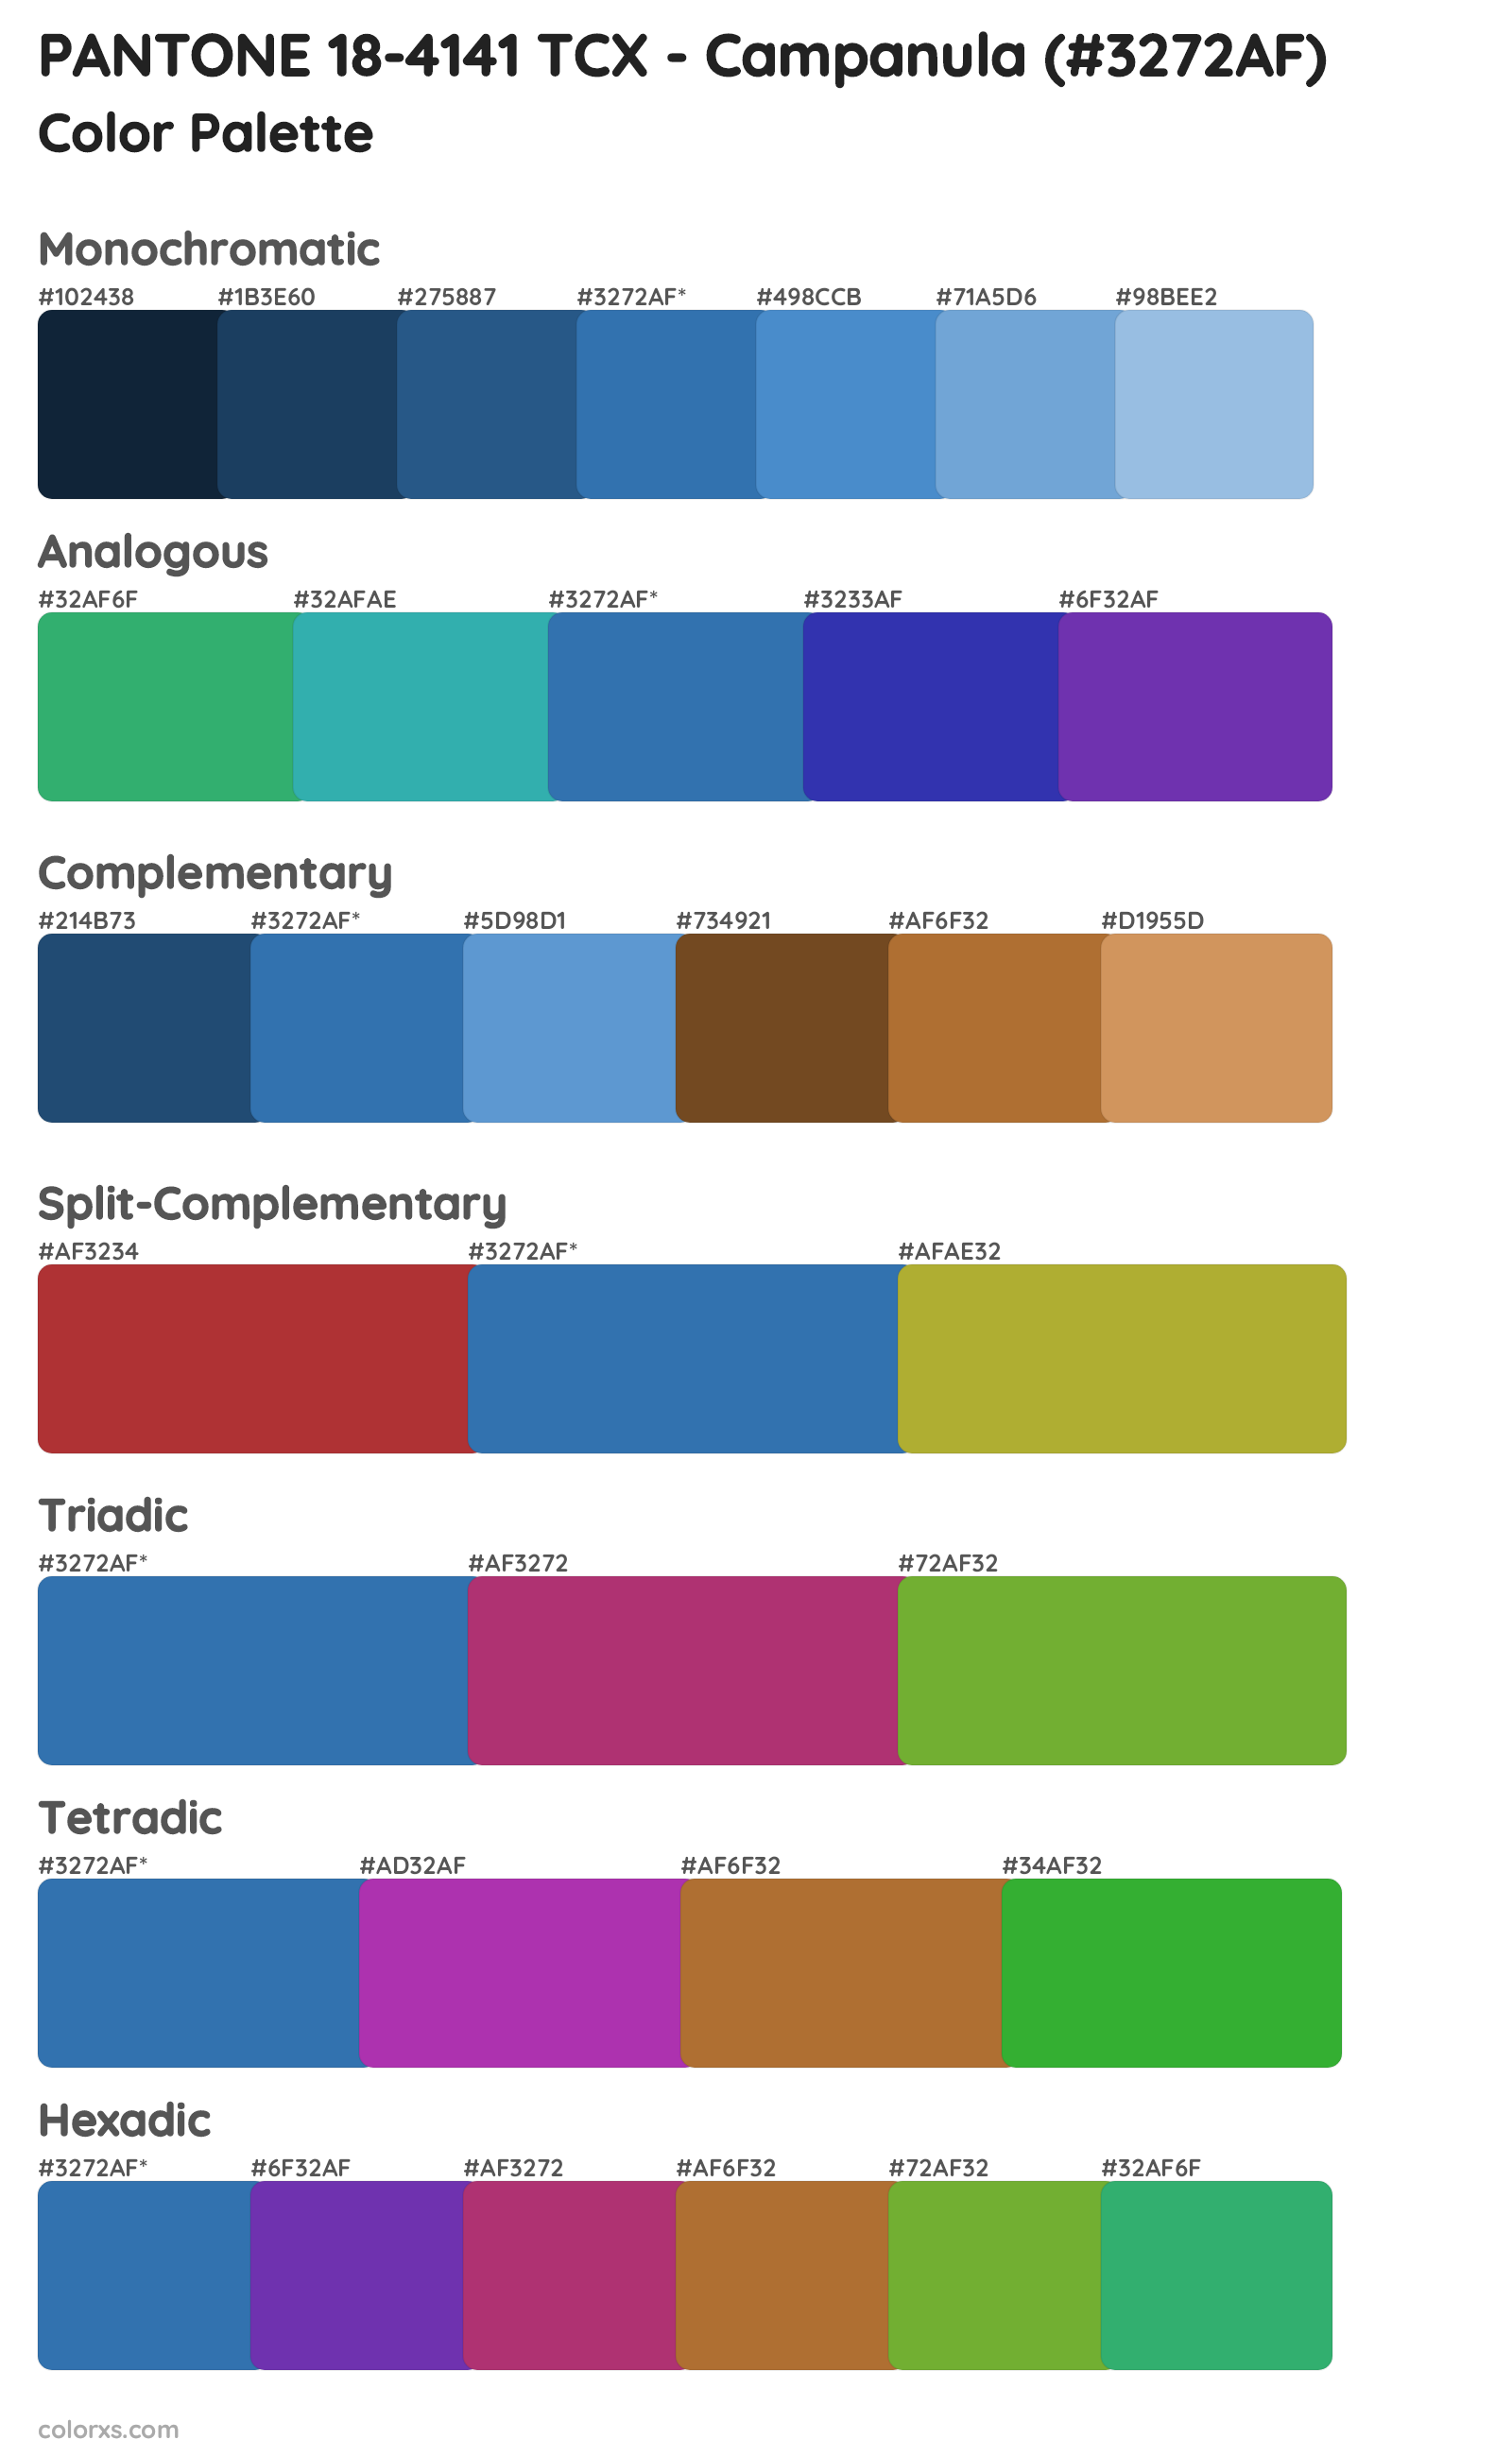 PANTONE 18-4141 TCX - Campanula Color Scheme Palettes